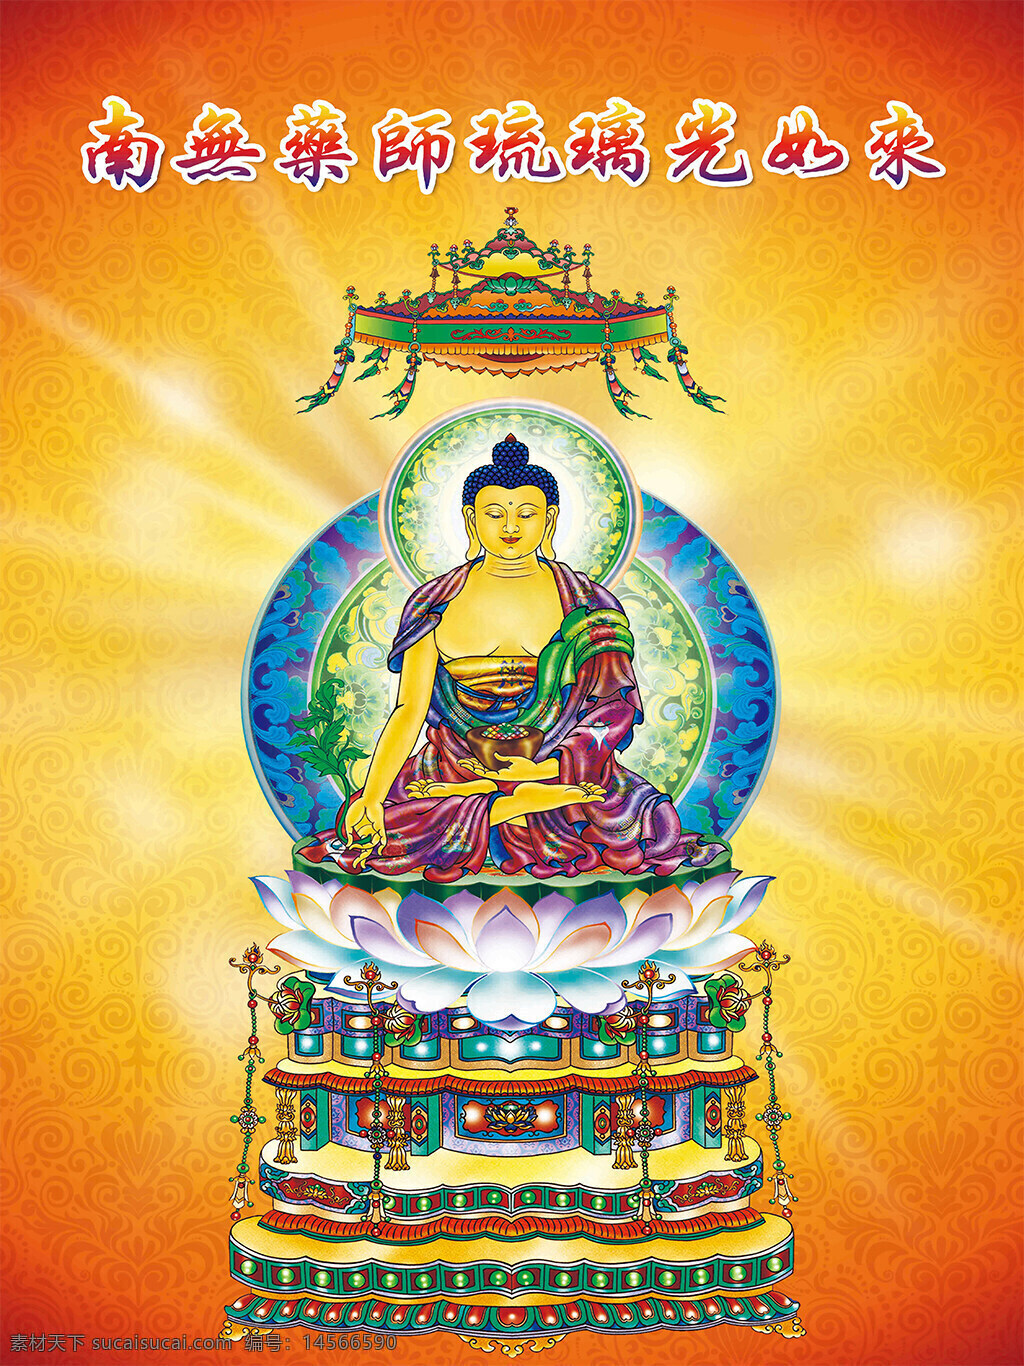 宗教佛教人物 宗教 佛教 佛教文化 如来 琉璃药师